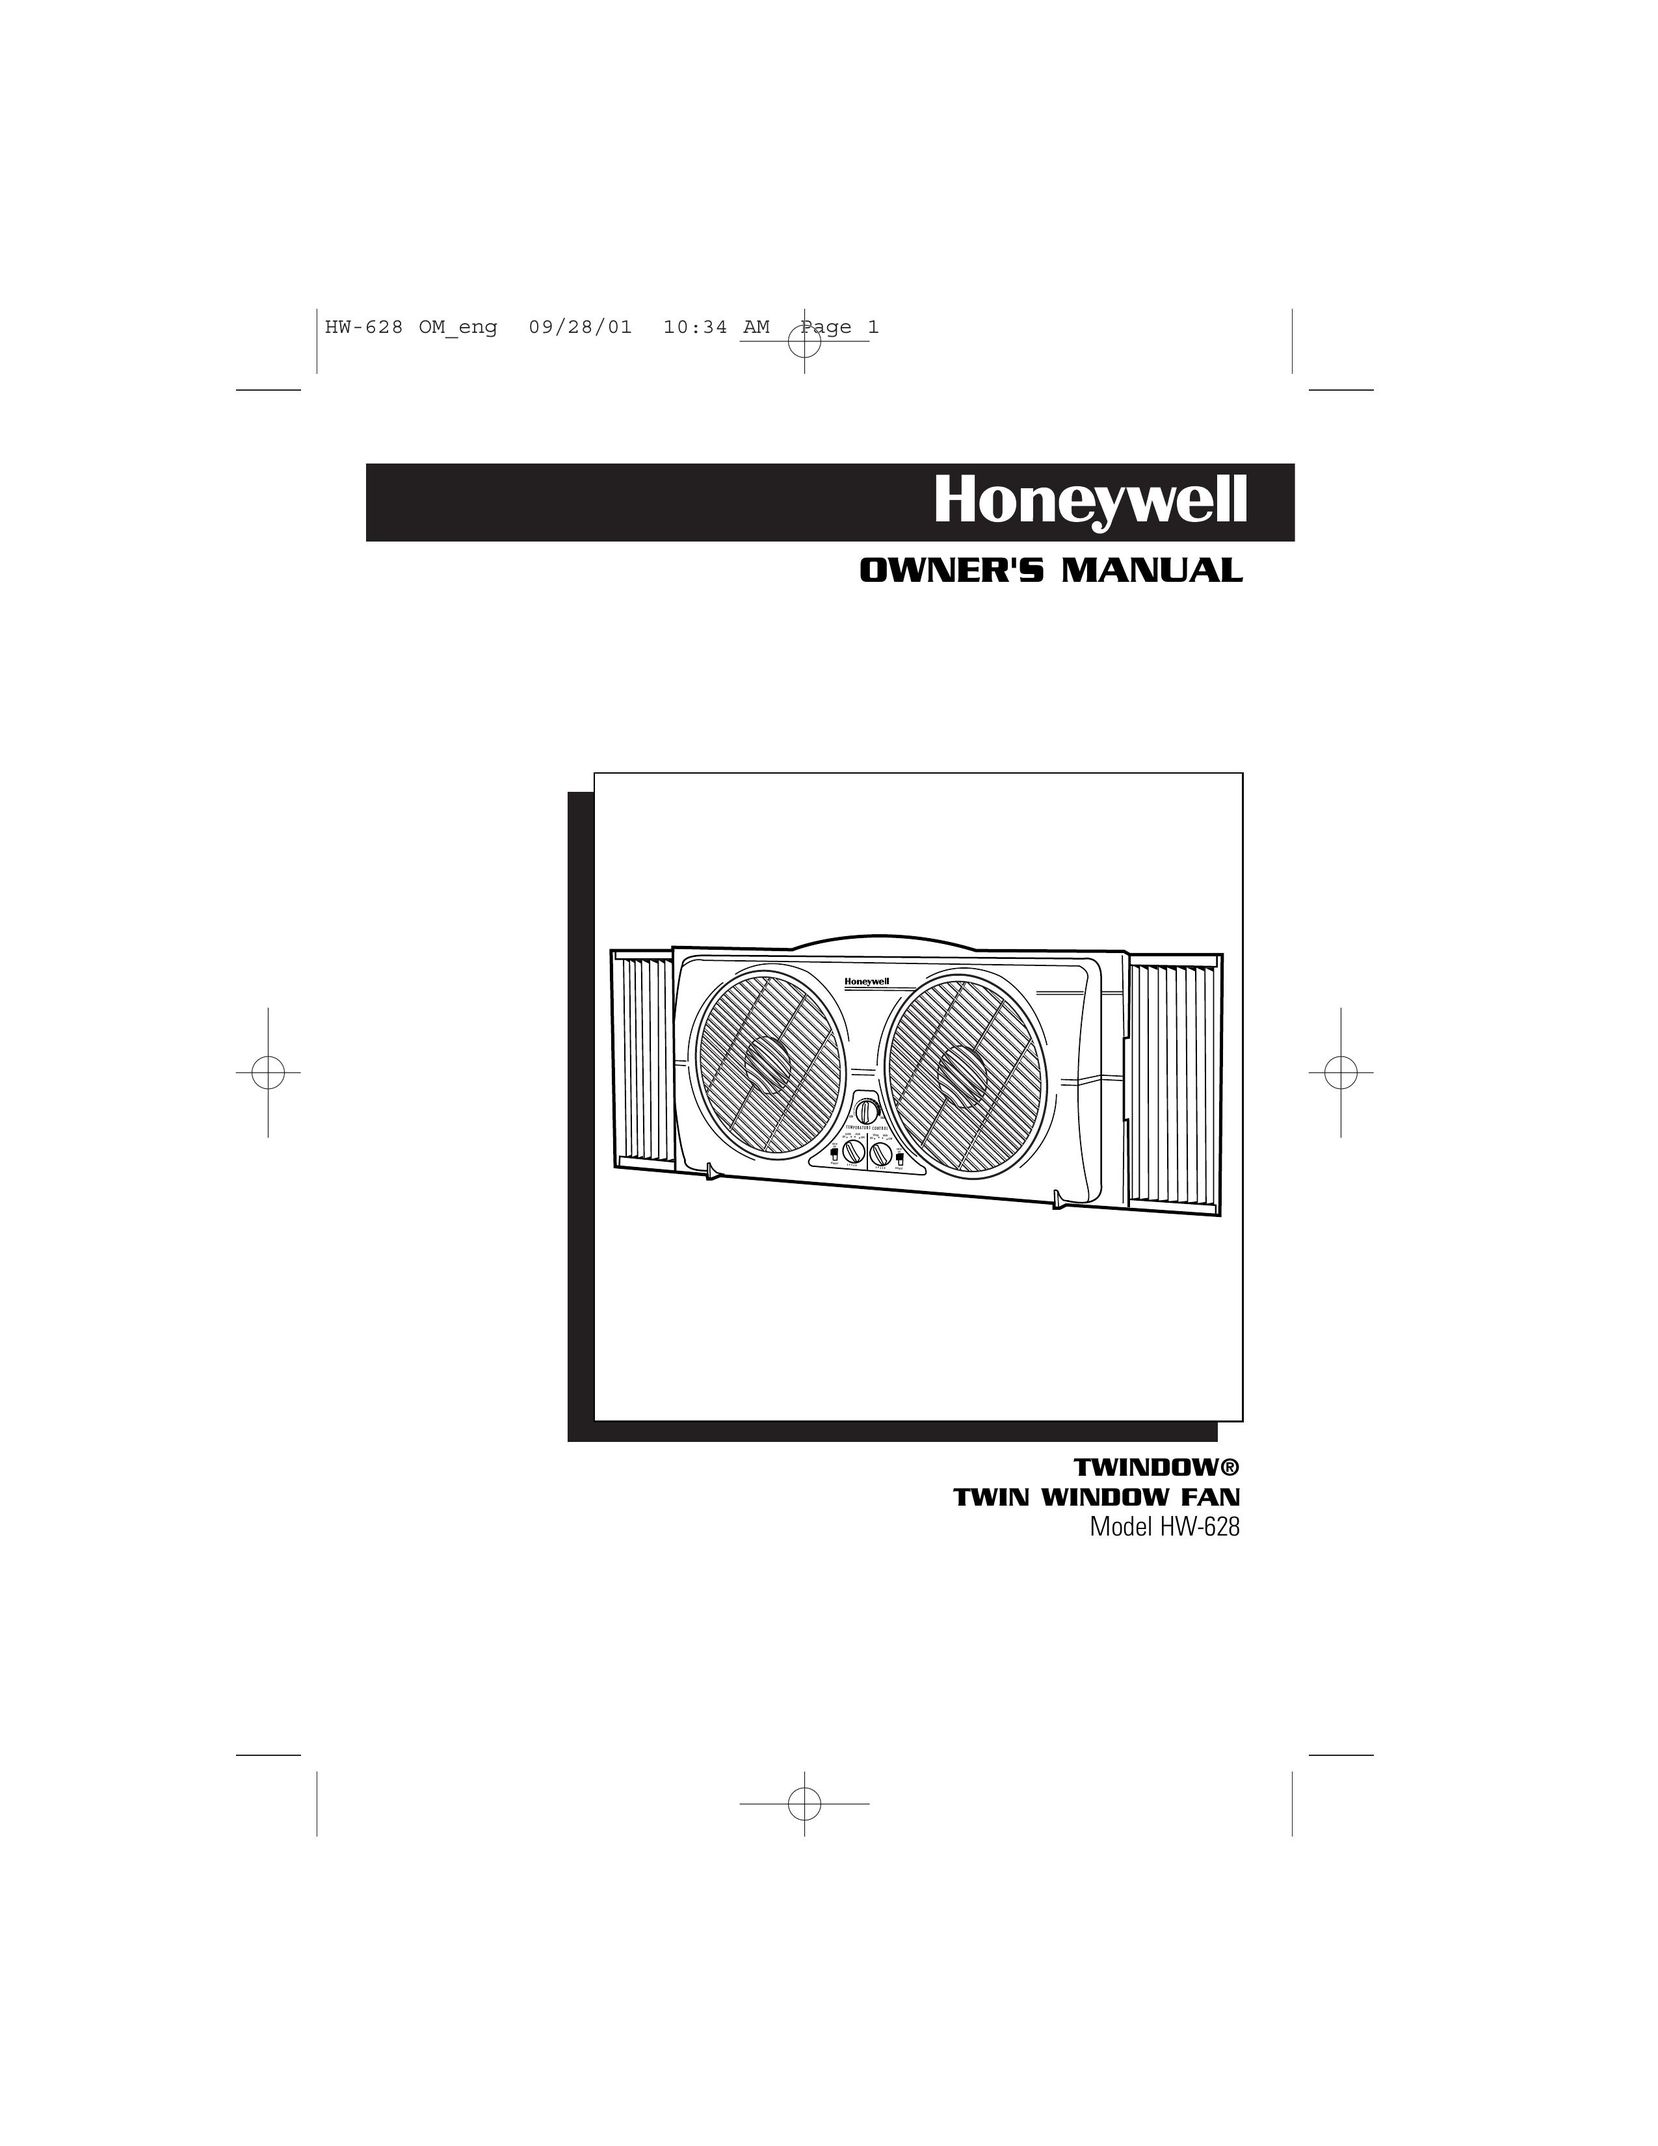 Honeywell HW-628 Fan User Manual